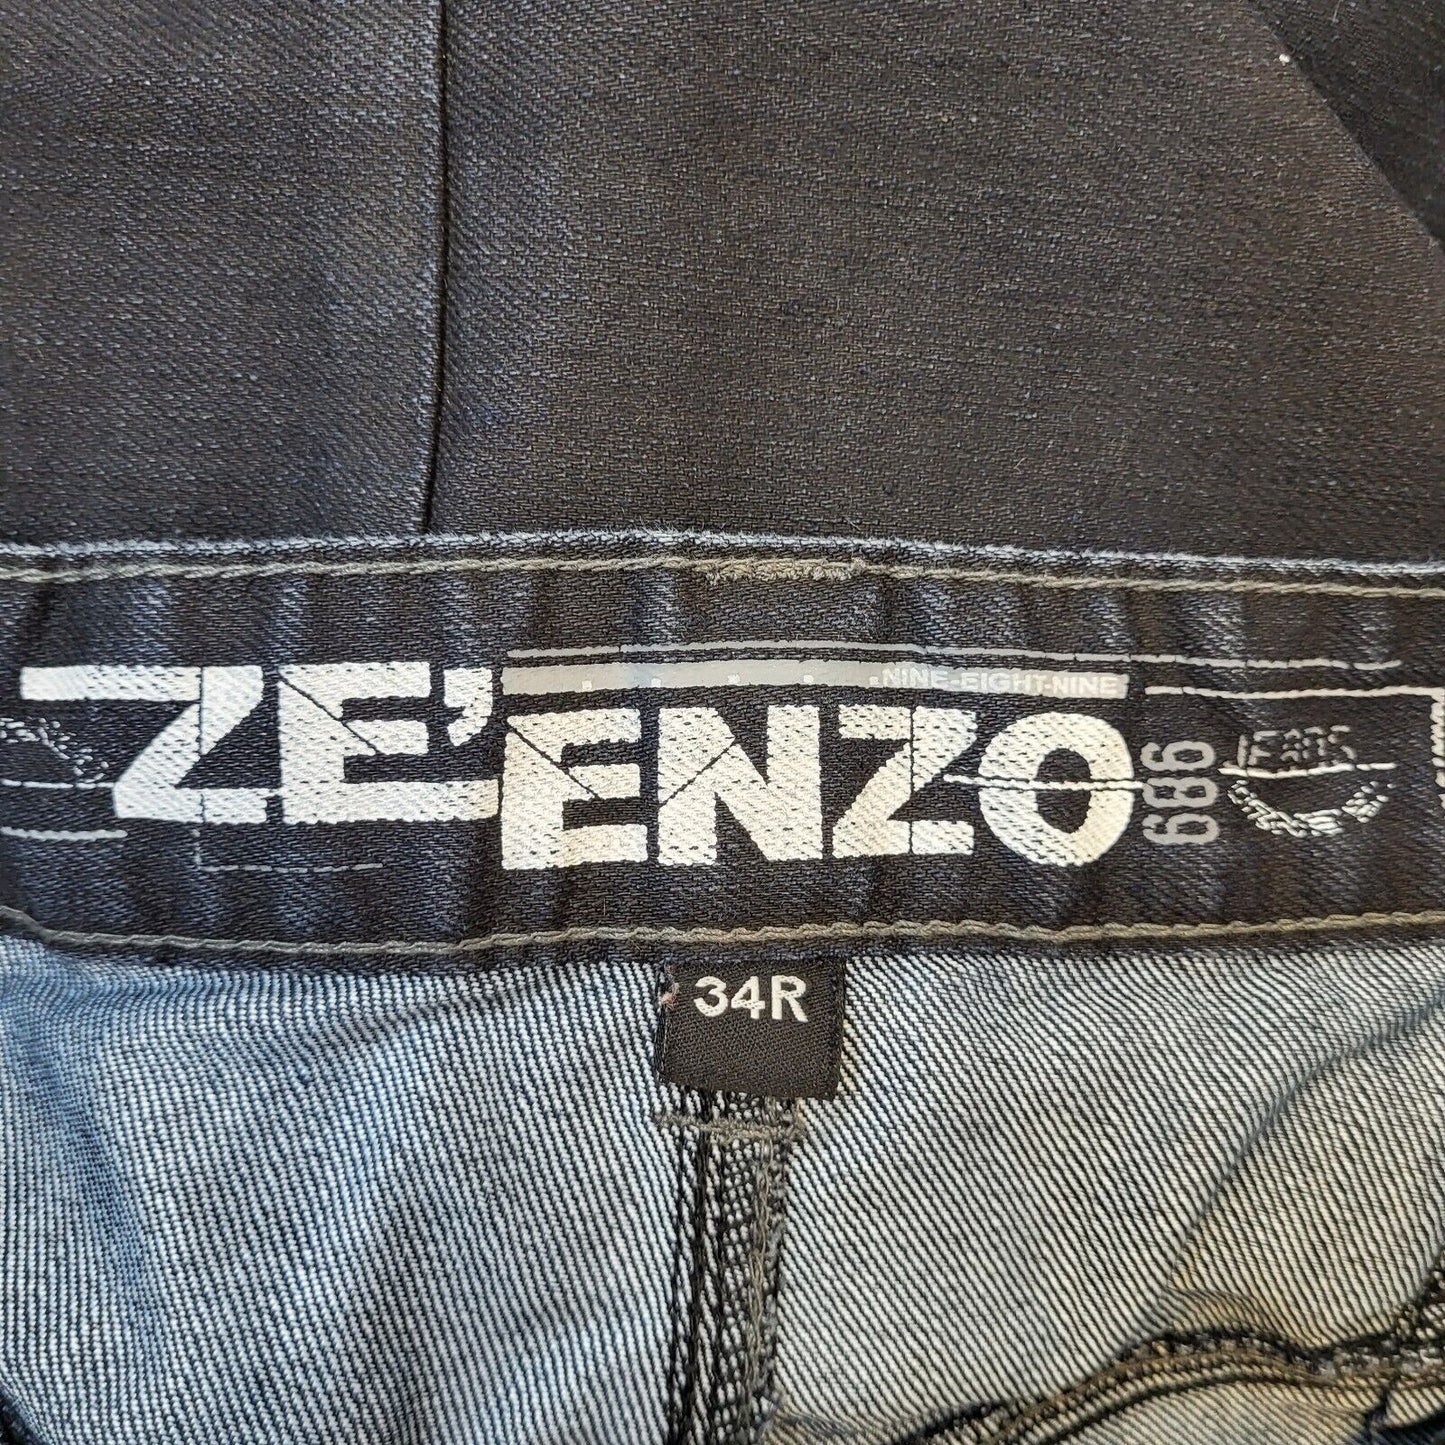 Zeenzo Jeans (L)